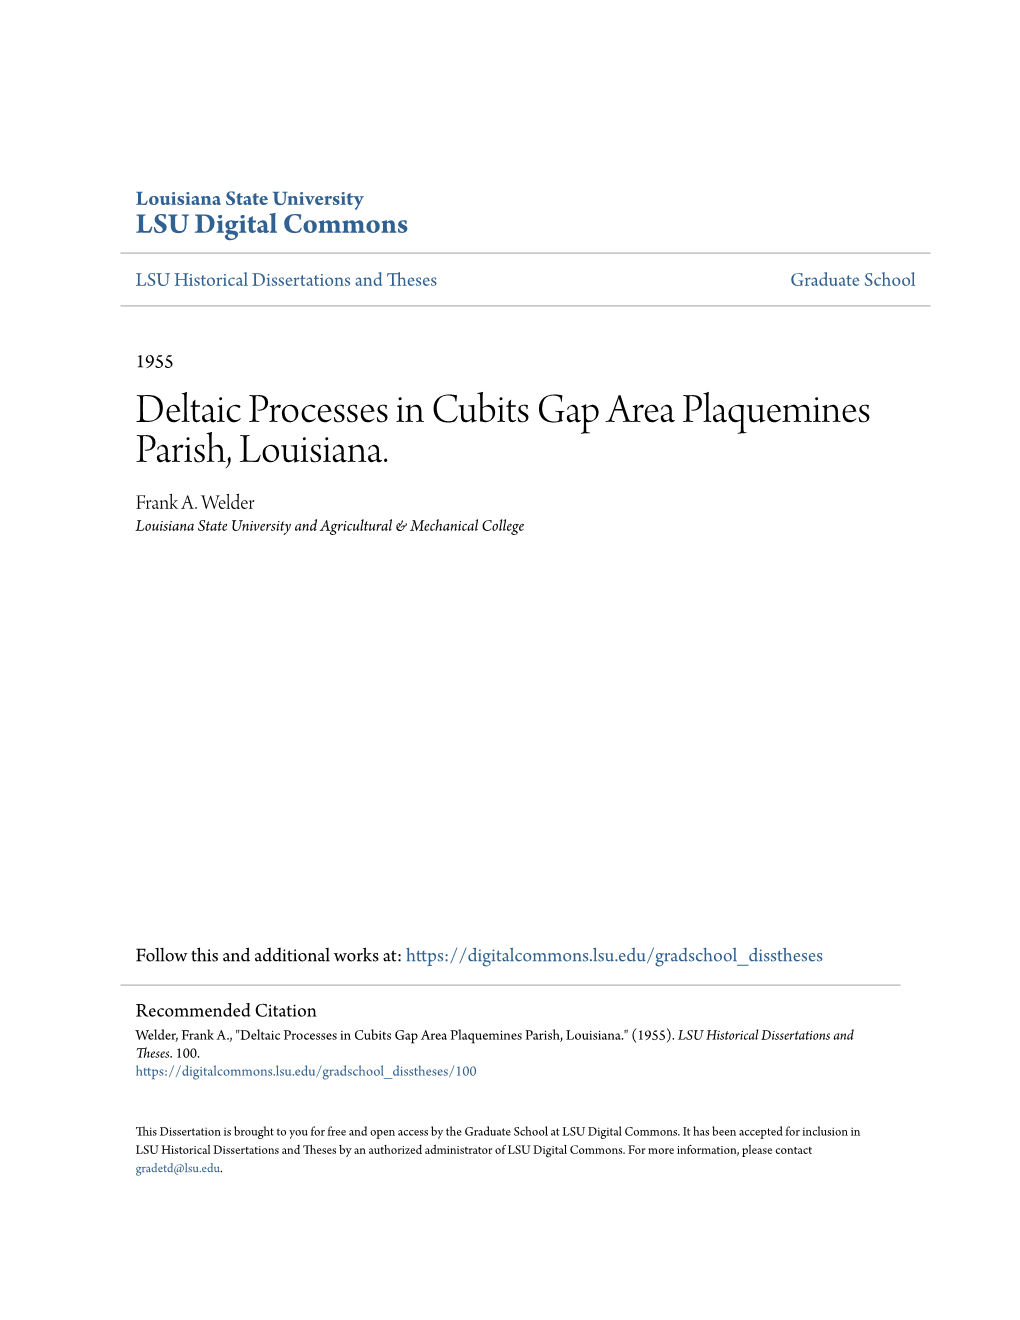 Deltaic Processes in Cubits Gap Area Plaquemines Parish, Louisiana. Frank A